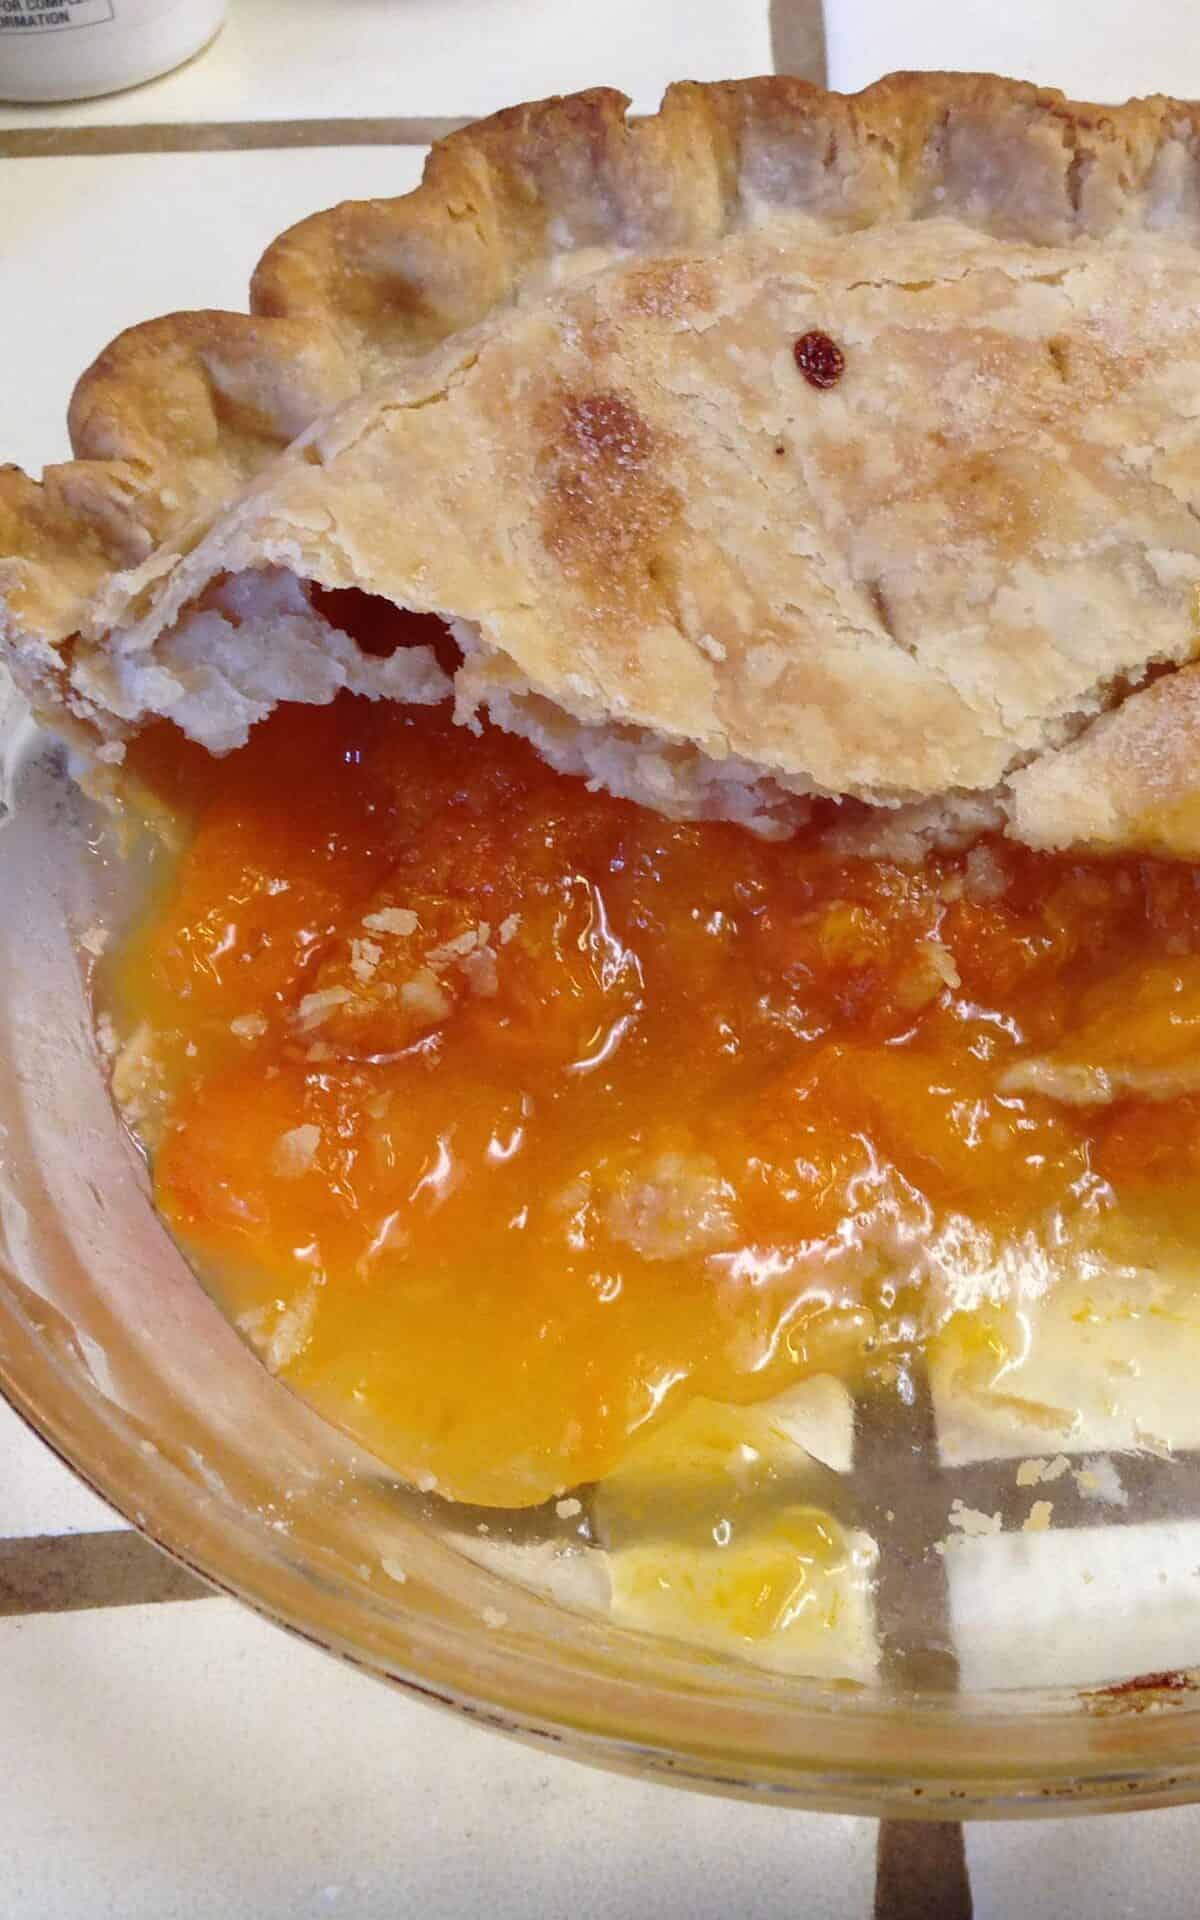  A slice of heaven: Apricot Sour Cream Pie